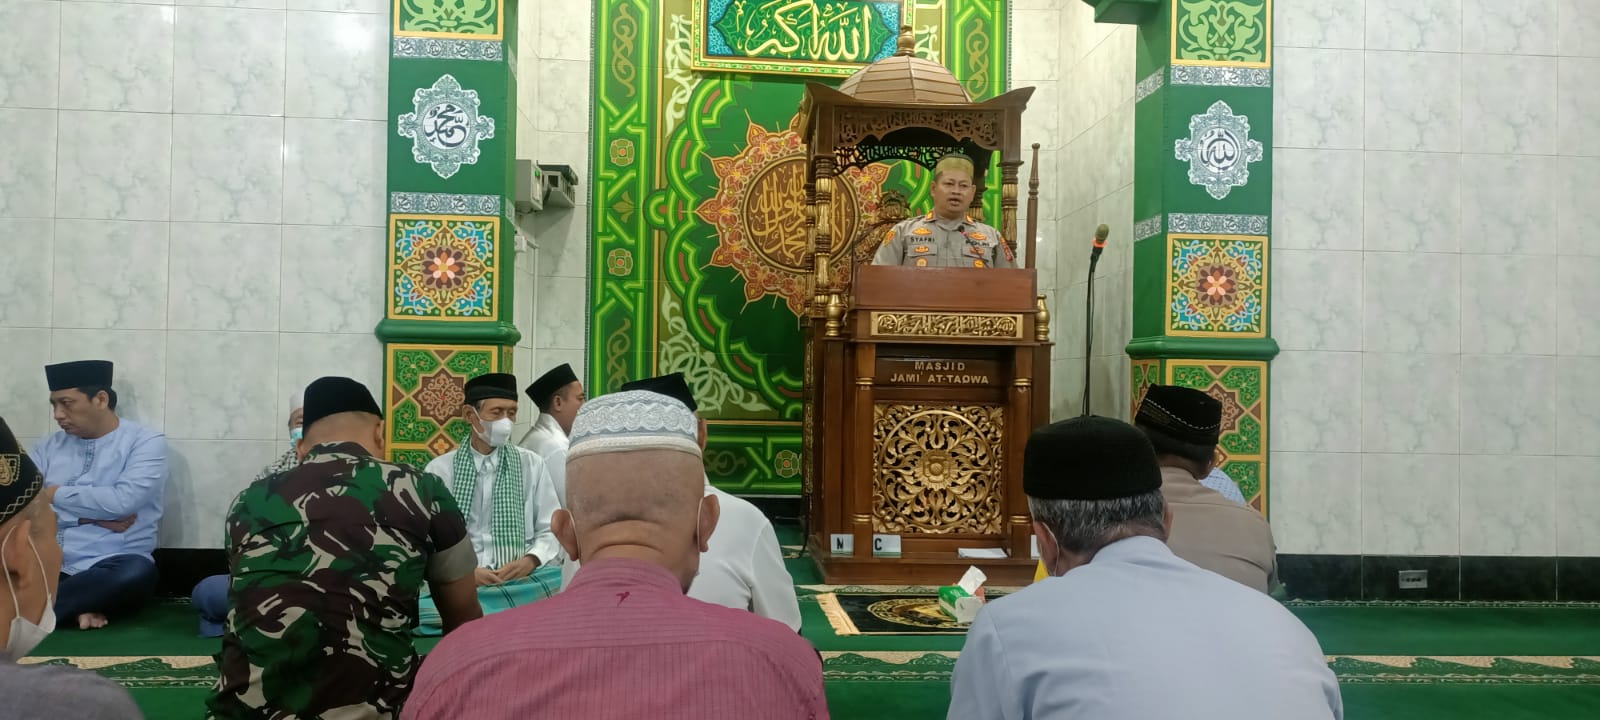 Kapolsek Kalideres Gencarkan Giat Suling Dakmas Kali ini Kunjungi Masjid Jami At Taqwa